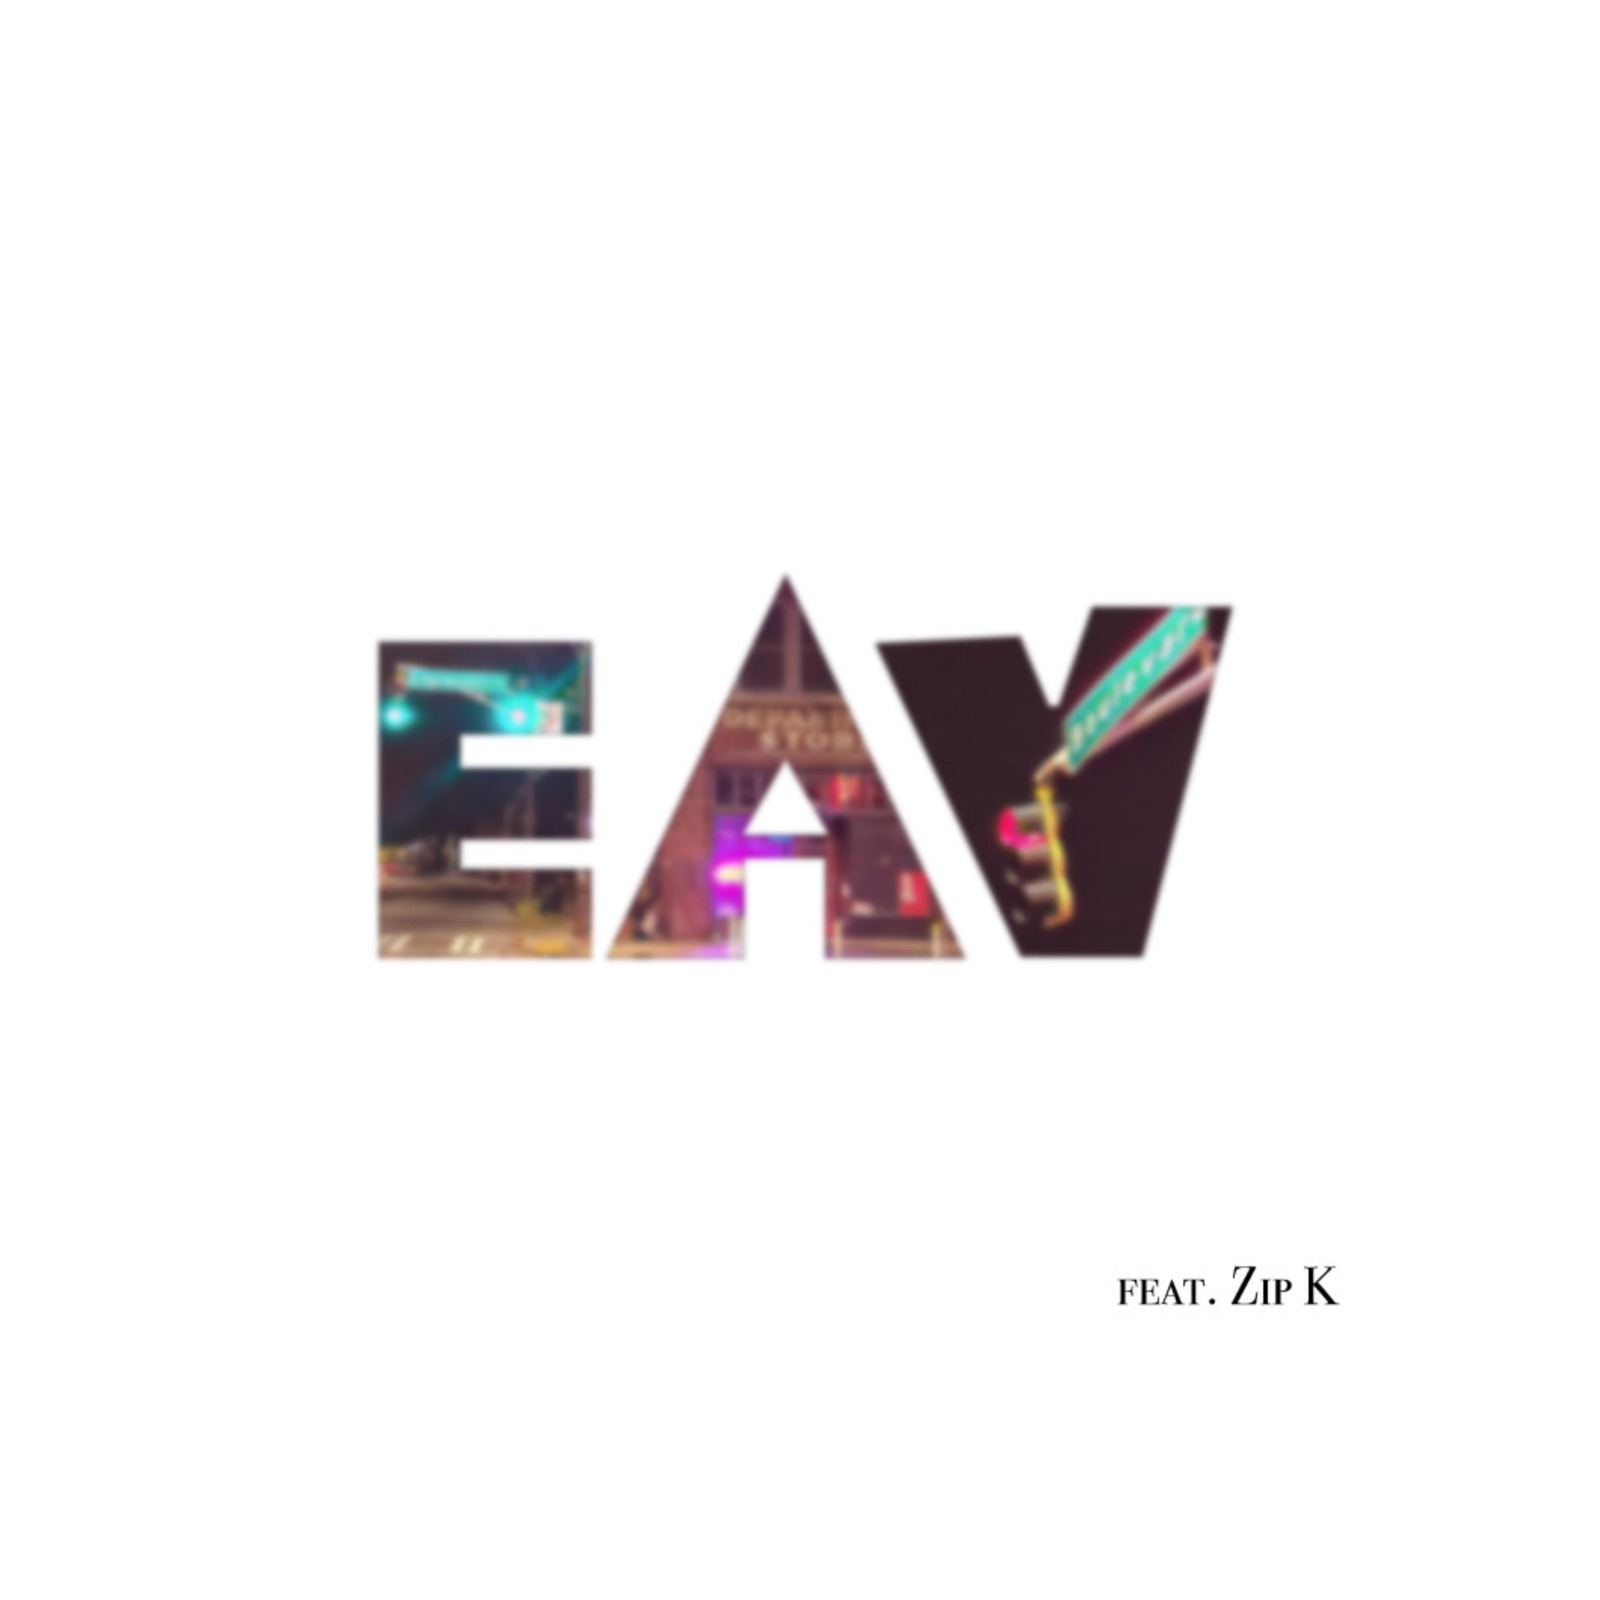 Eav (feat. Zip K)